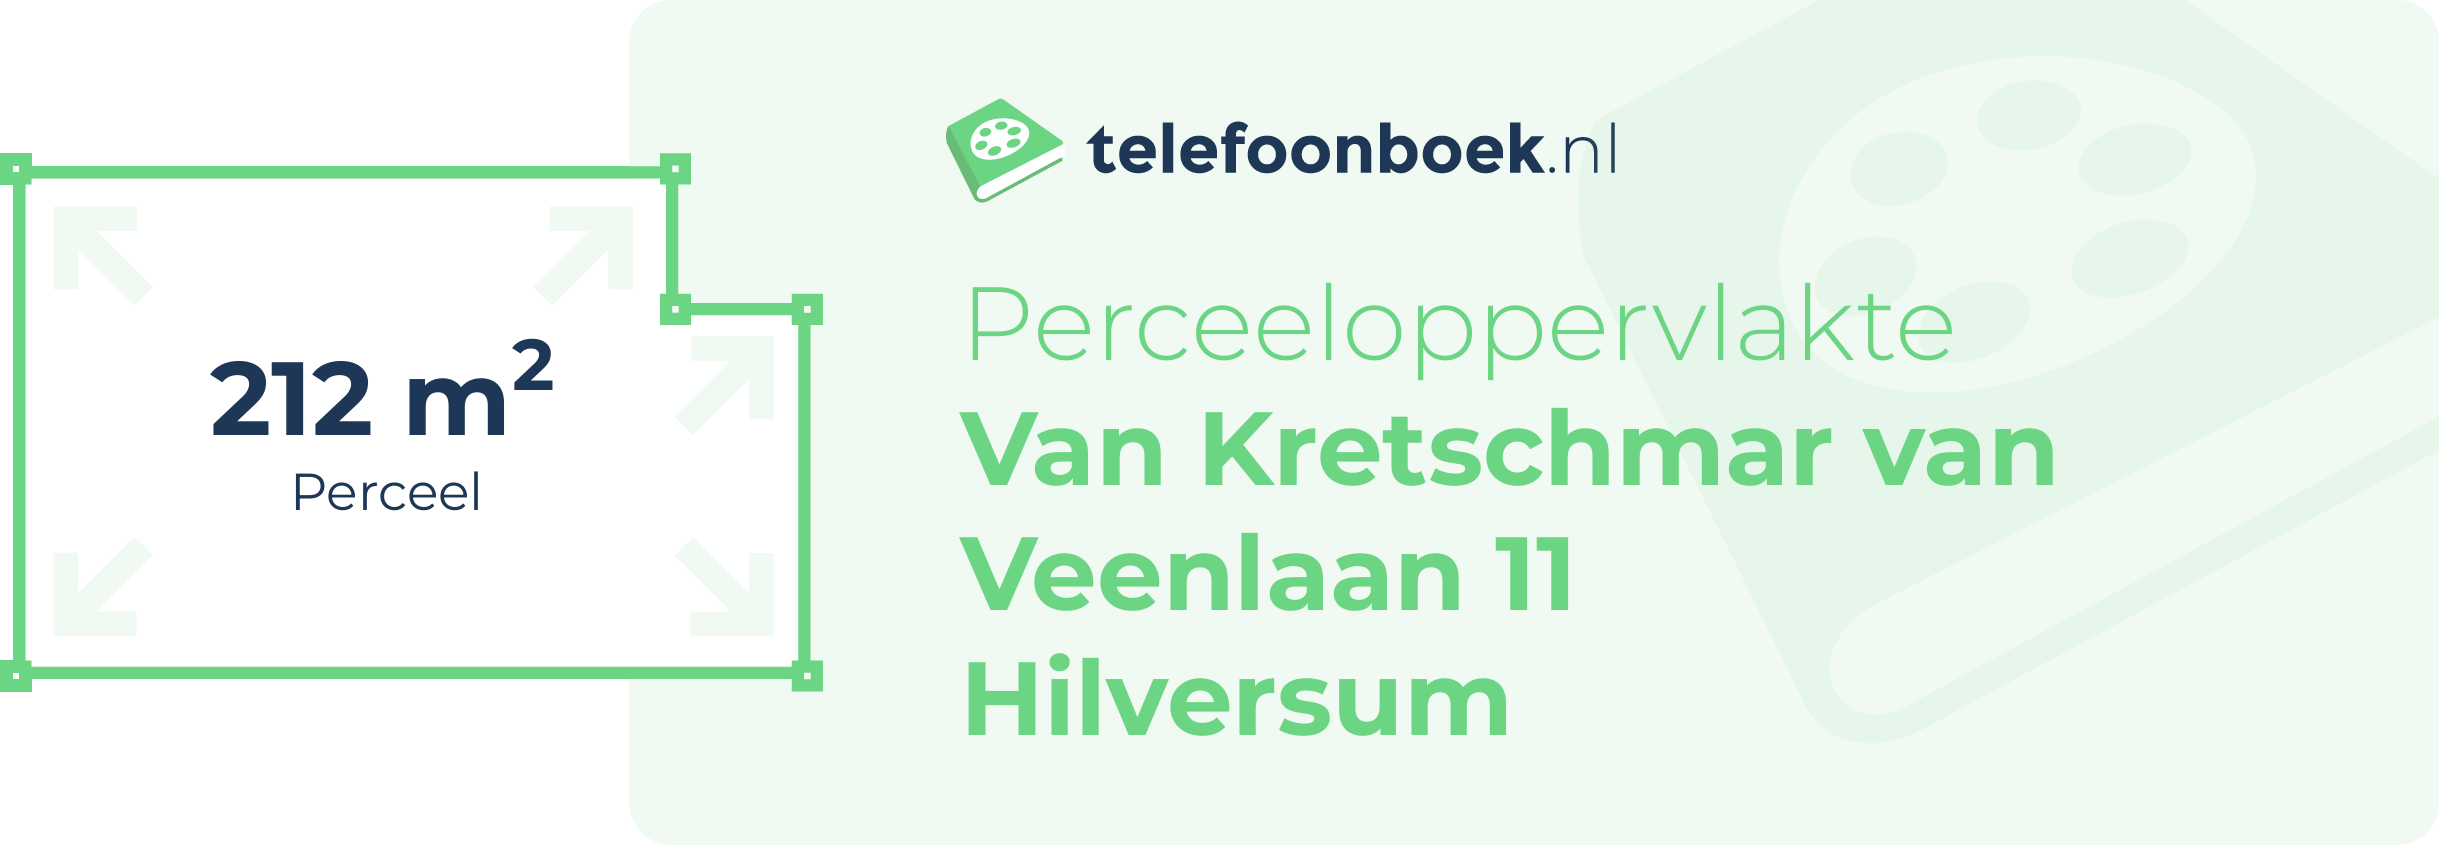 Perceeloppervlakte Van Kretschmar Van Veenlaan 11 Hilversum